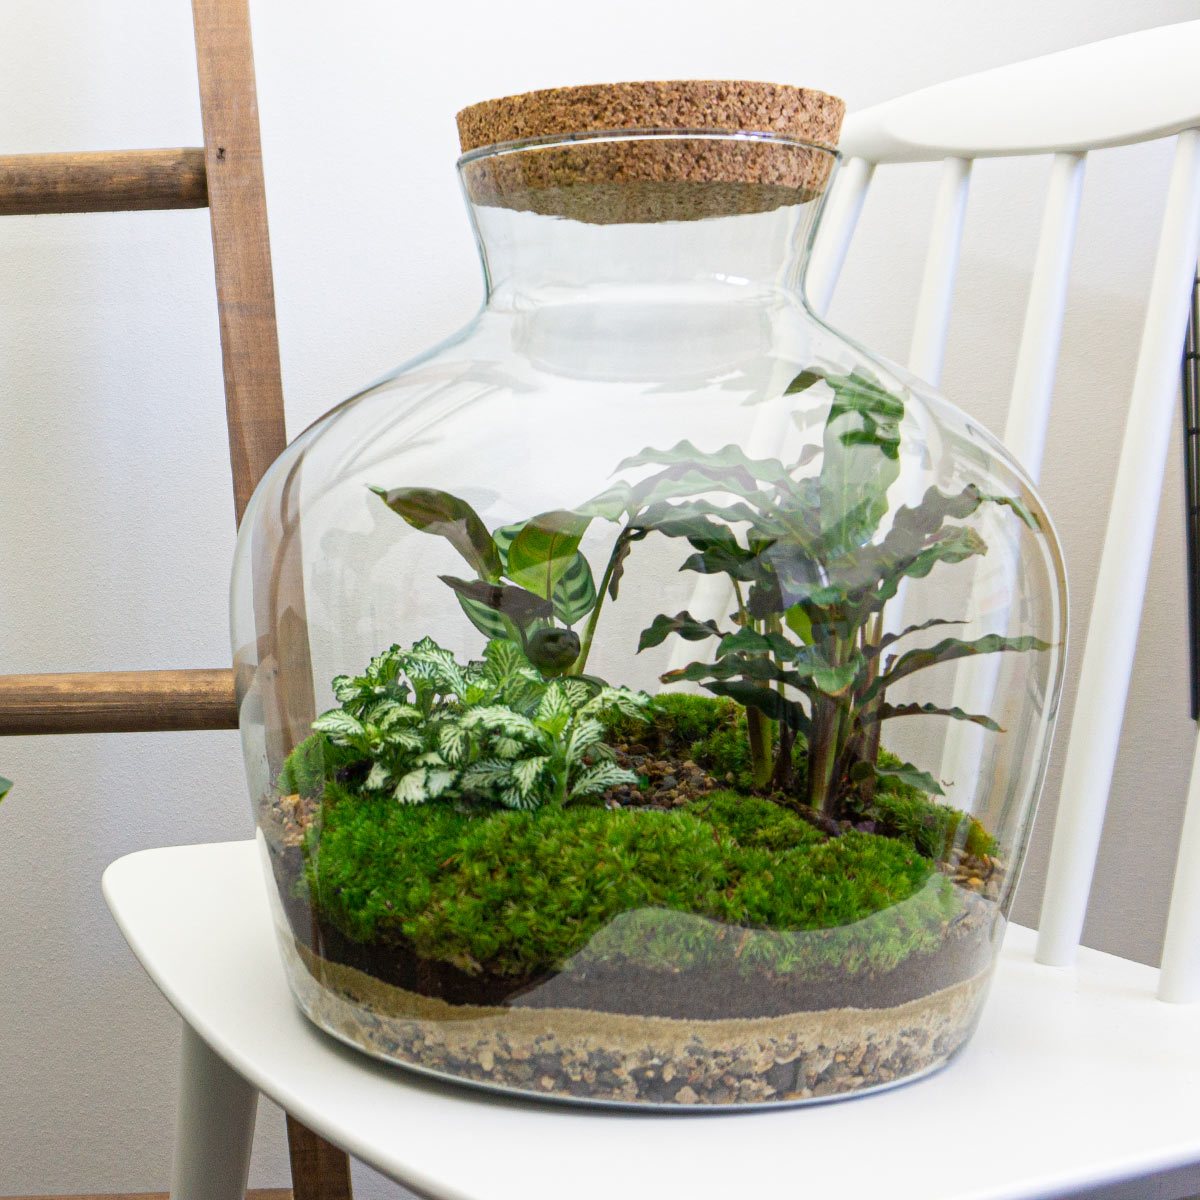 pak Reusachtig Kroniek Terrarium DIY Kit • Fat Joe • Ecosystem with plants • ↑ 30 cm – urbanjngl